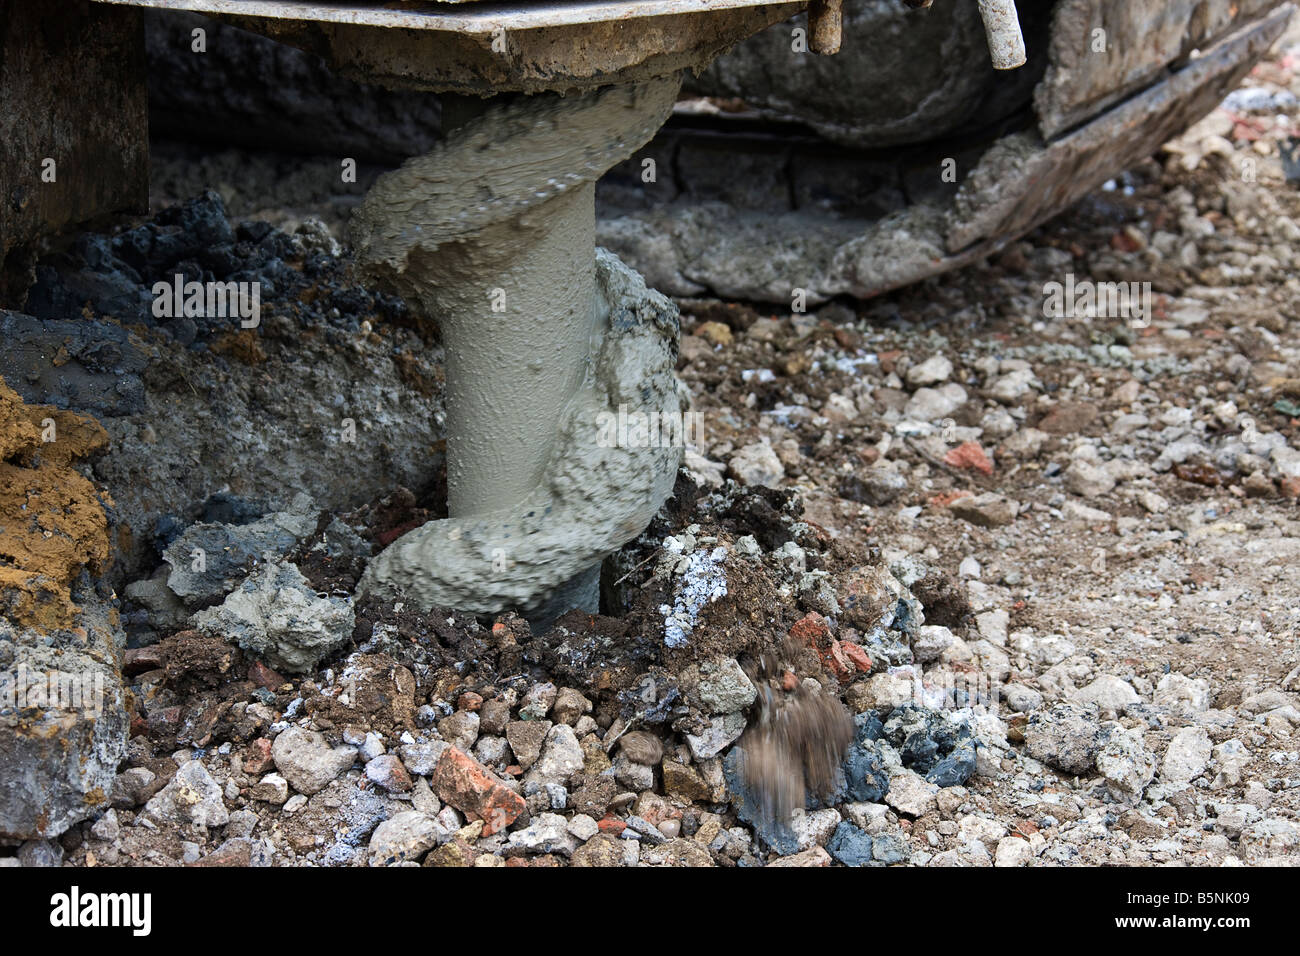 La preparazione del sito per una pila mediante perforazione nel terreno argilloso con una coclea Foto Stock